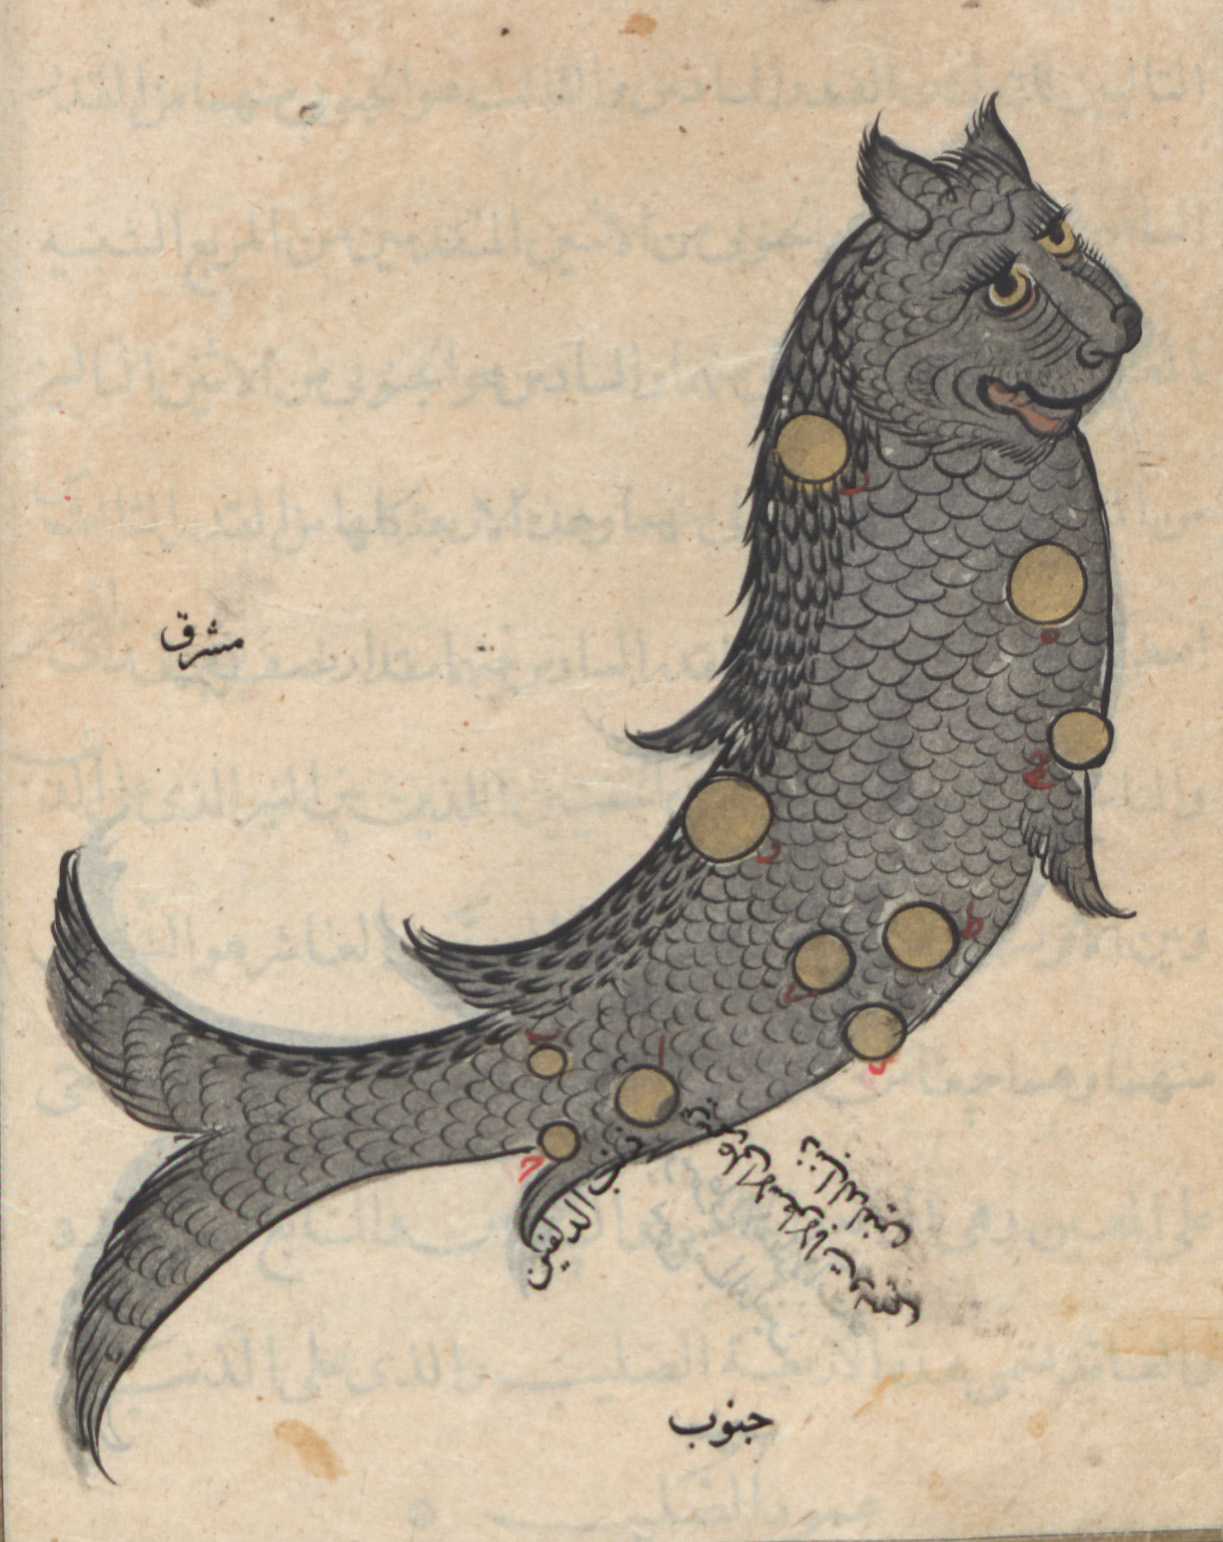 تصویر صورت فلکی دلفین از کتاب صورالکواکب عبدالرحمان صوفی#نجوم